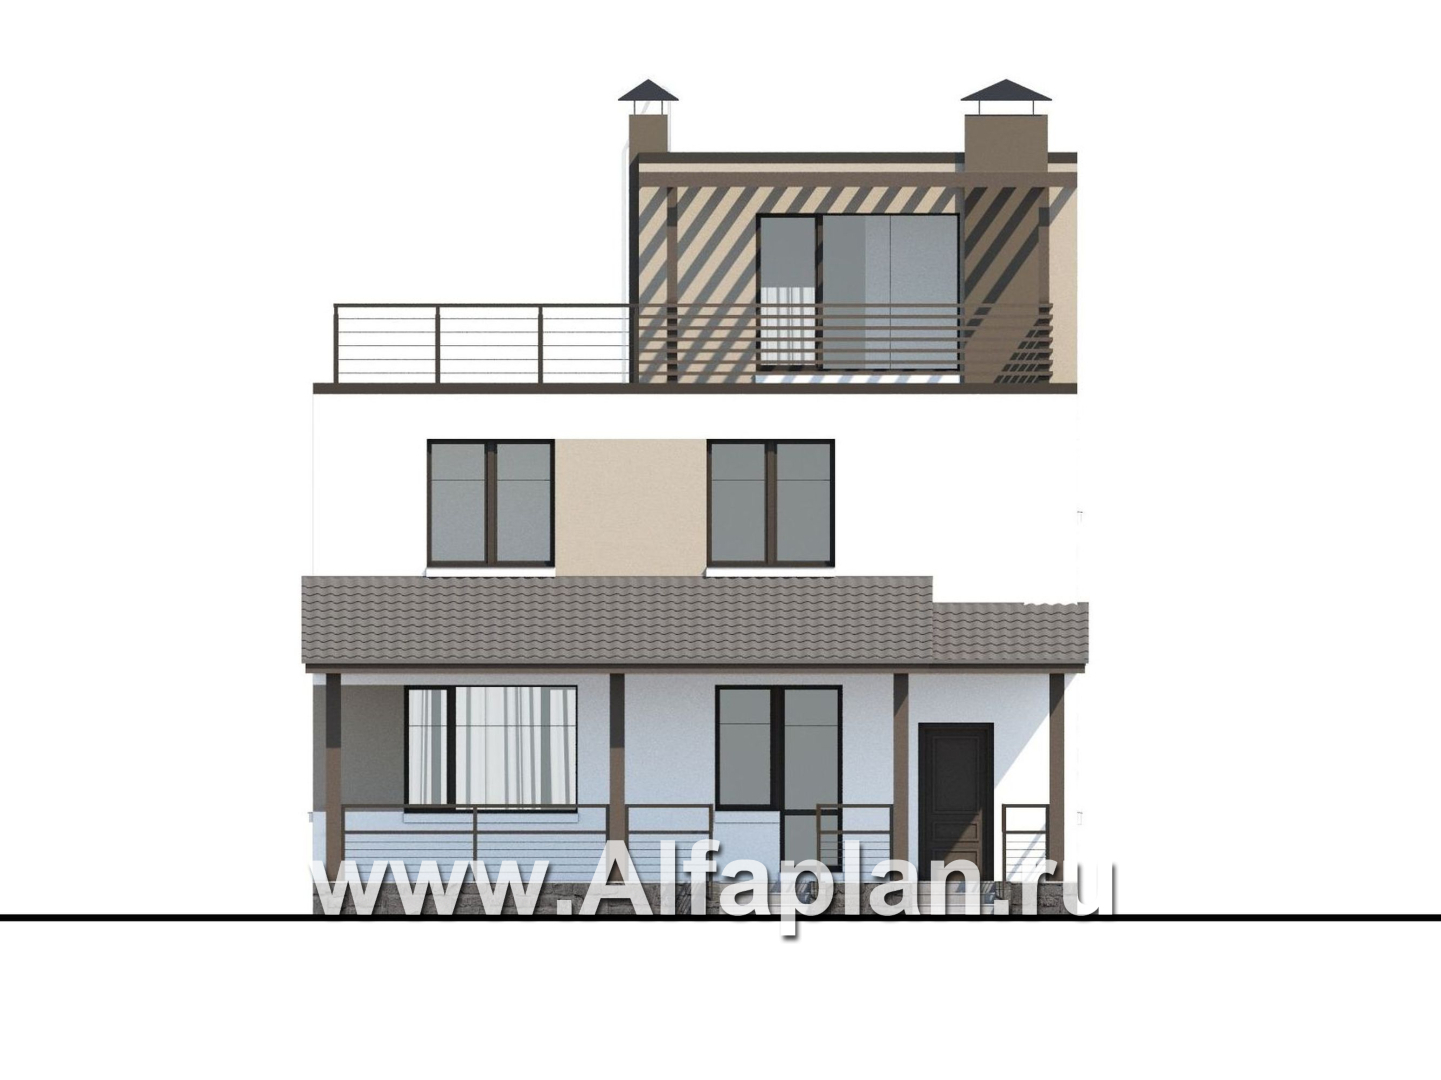 «Приоритет» - проект двухэтажного дома из газобетона, с открытой планировкой,  с эксплуатируемой крышей, в стиле хай-тек - фасад дома